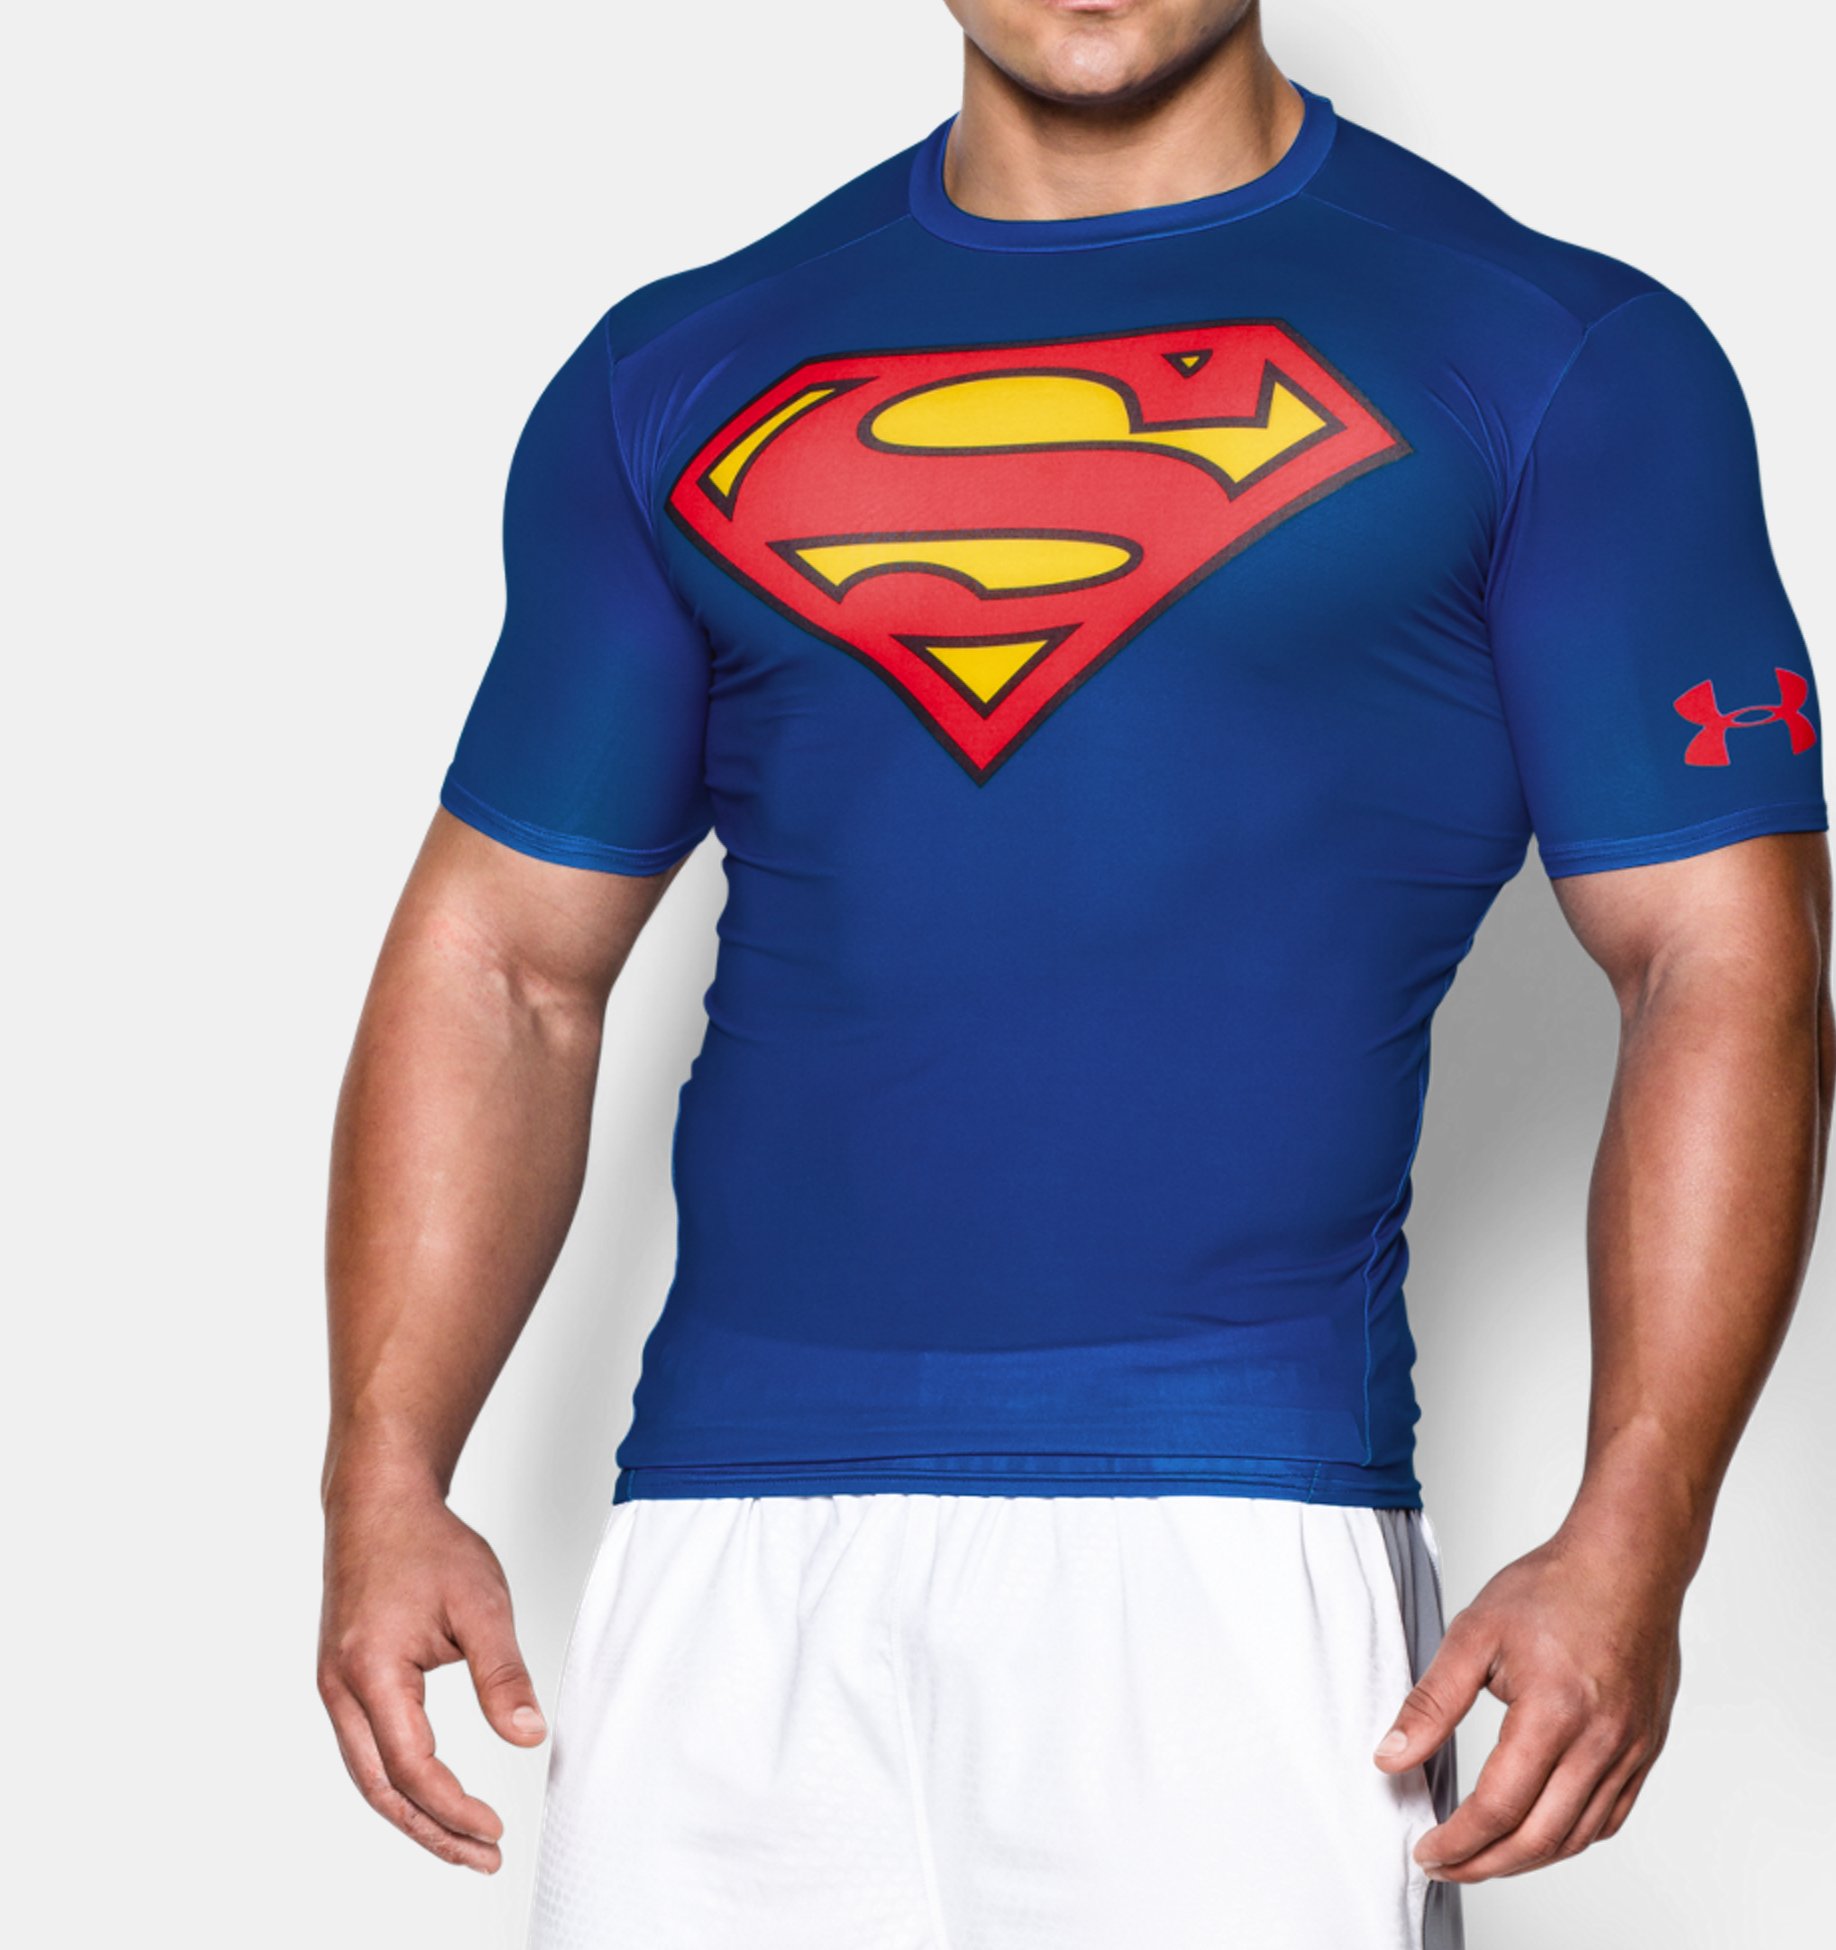 Герой повседневной жизни. Under Armour Superman. Футболка Супермен синяя мужская. Супермен спорт. Розовый Супермен.